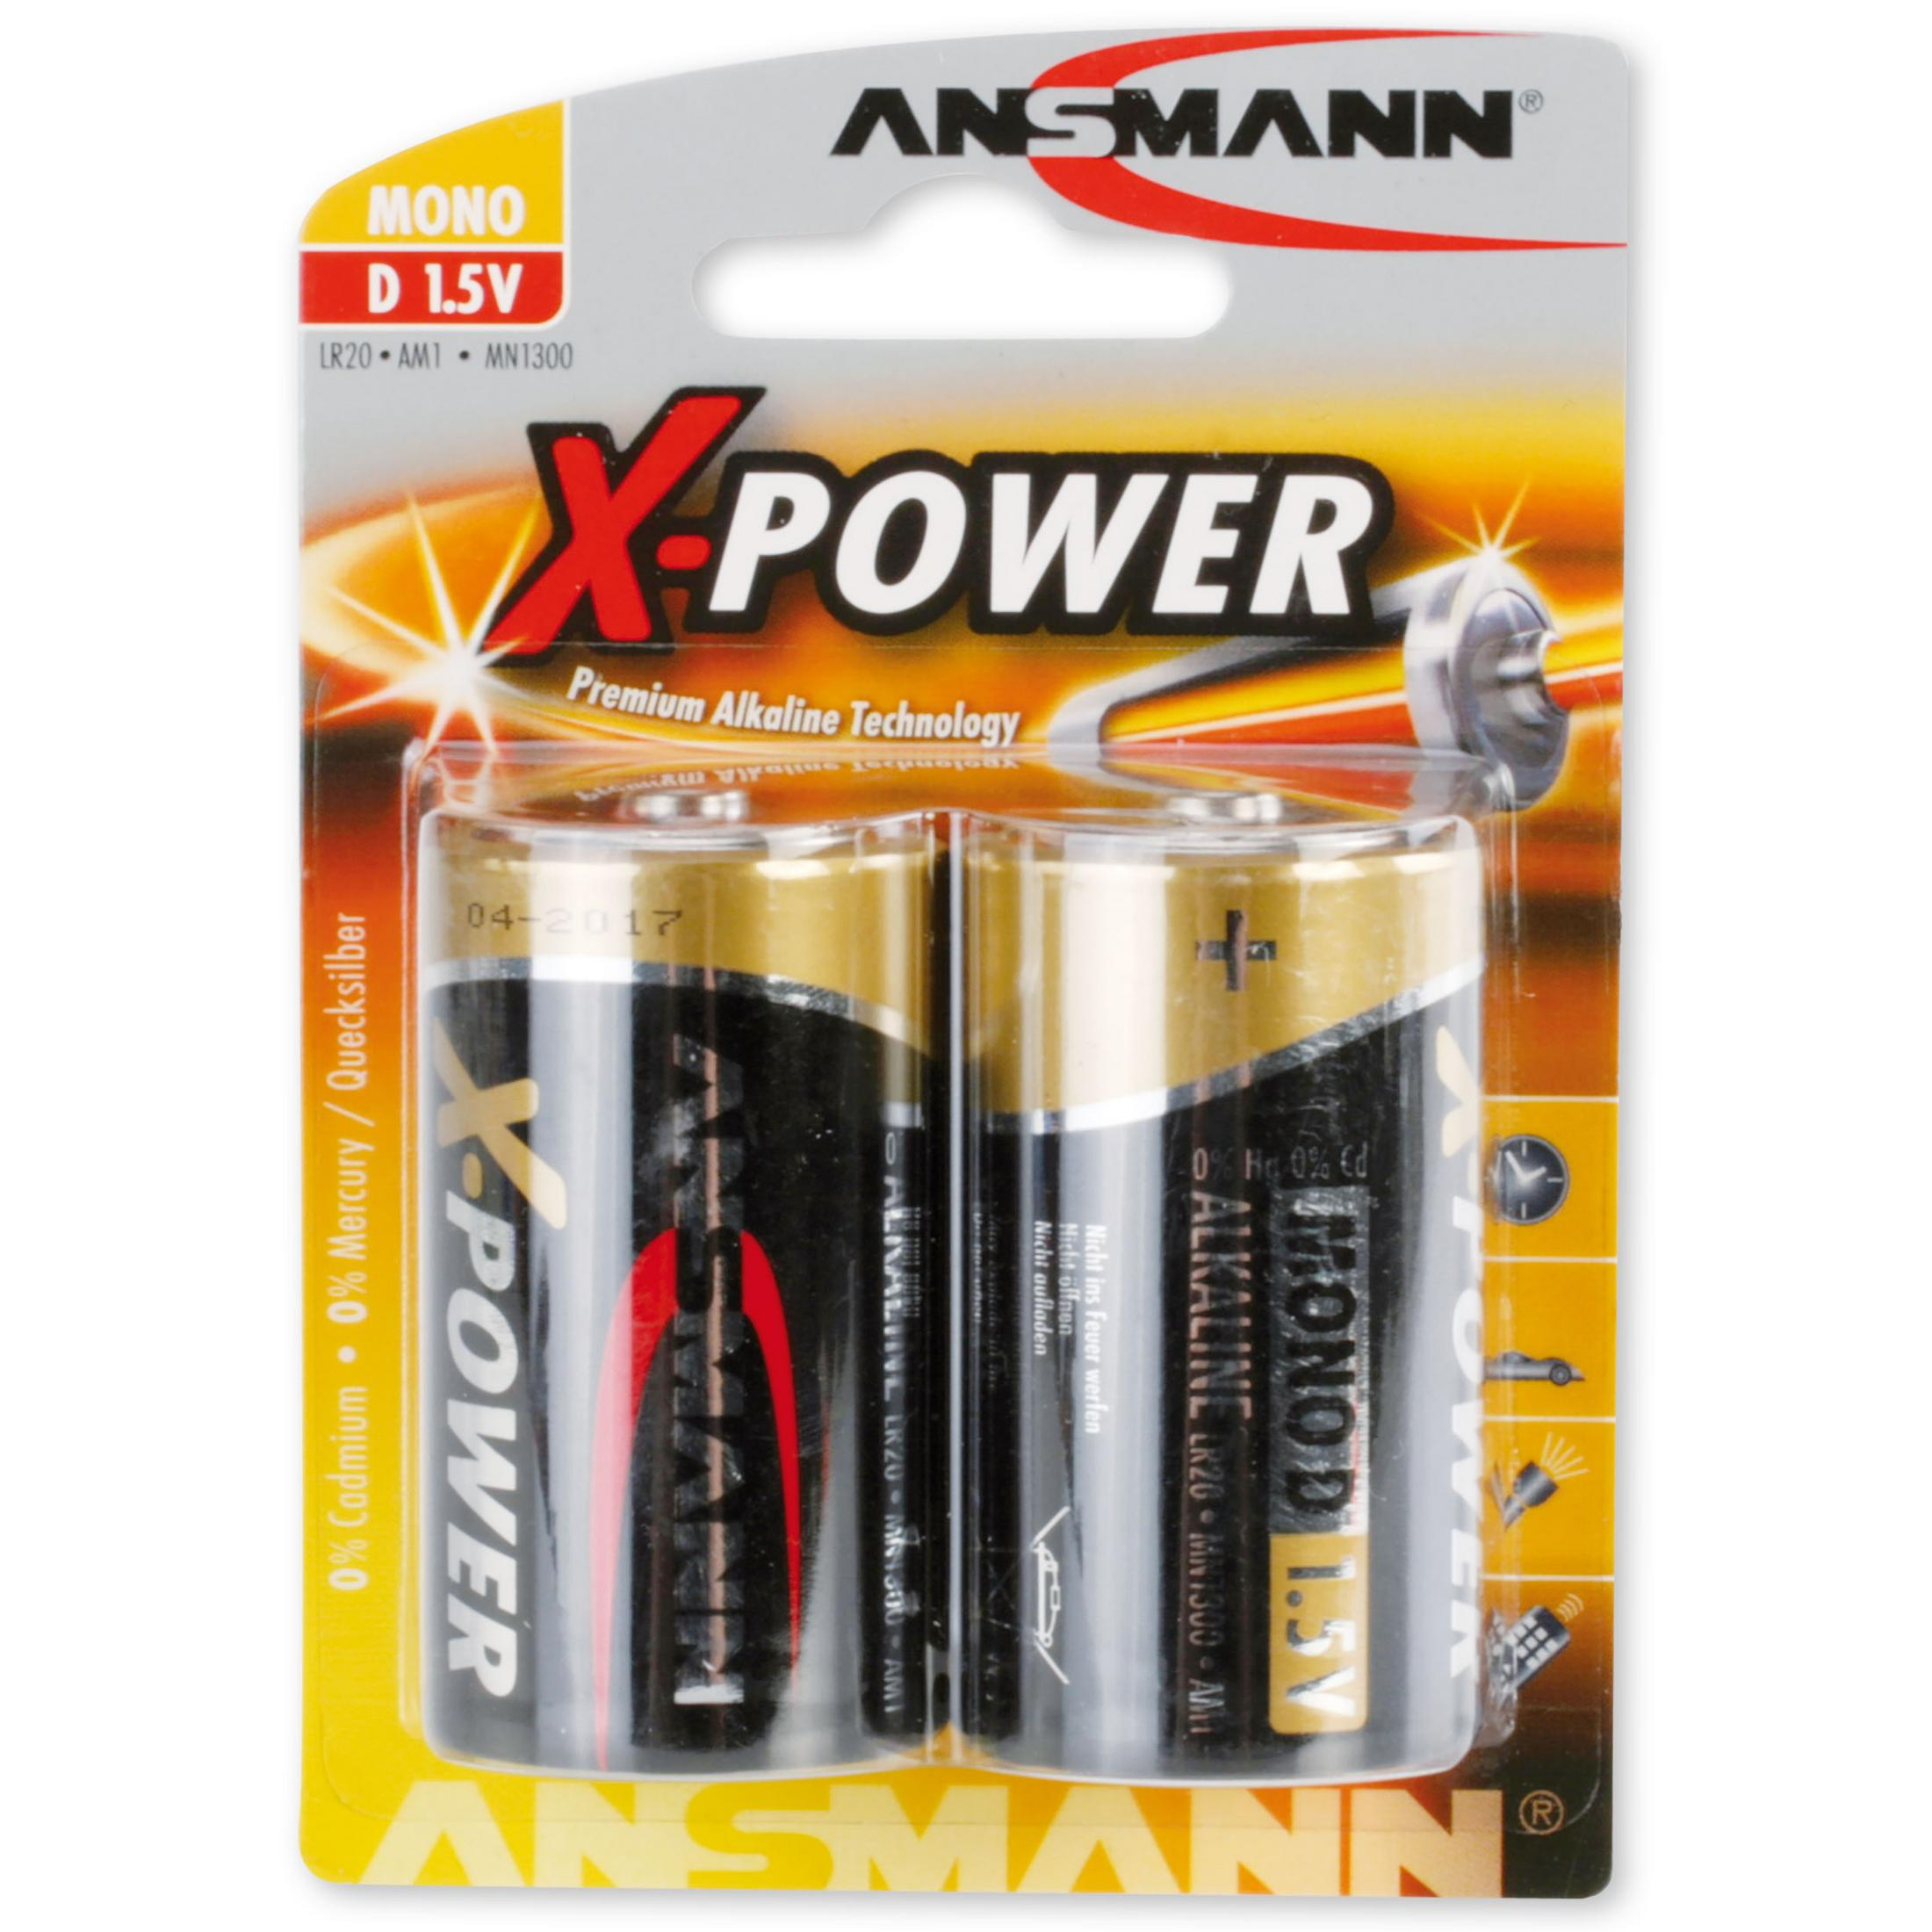 1.5 / Strom Batterien, 2er-Pack Batterie ANSMANN 5015633 Alkaline, Volt Batterien D, Alkaline X-Power, / Stück Mono 2 ANSMANN